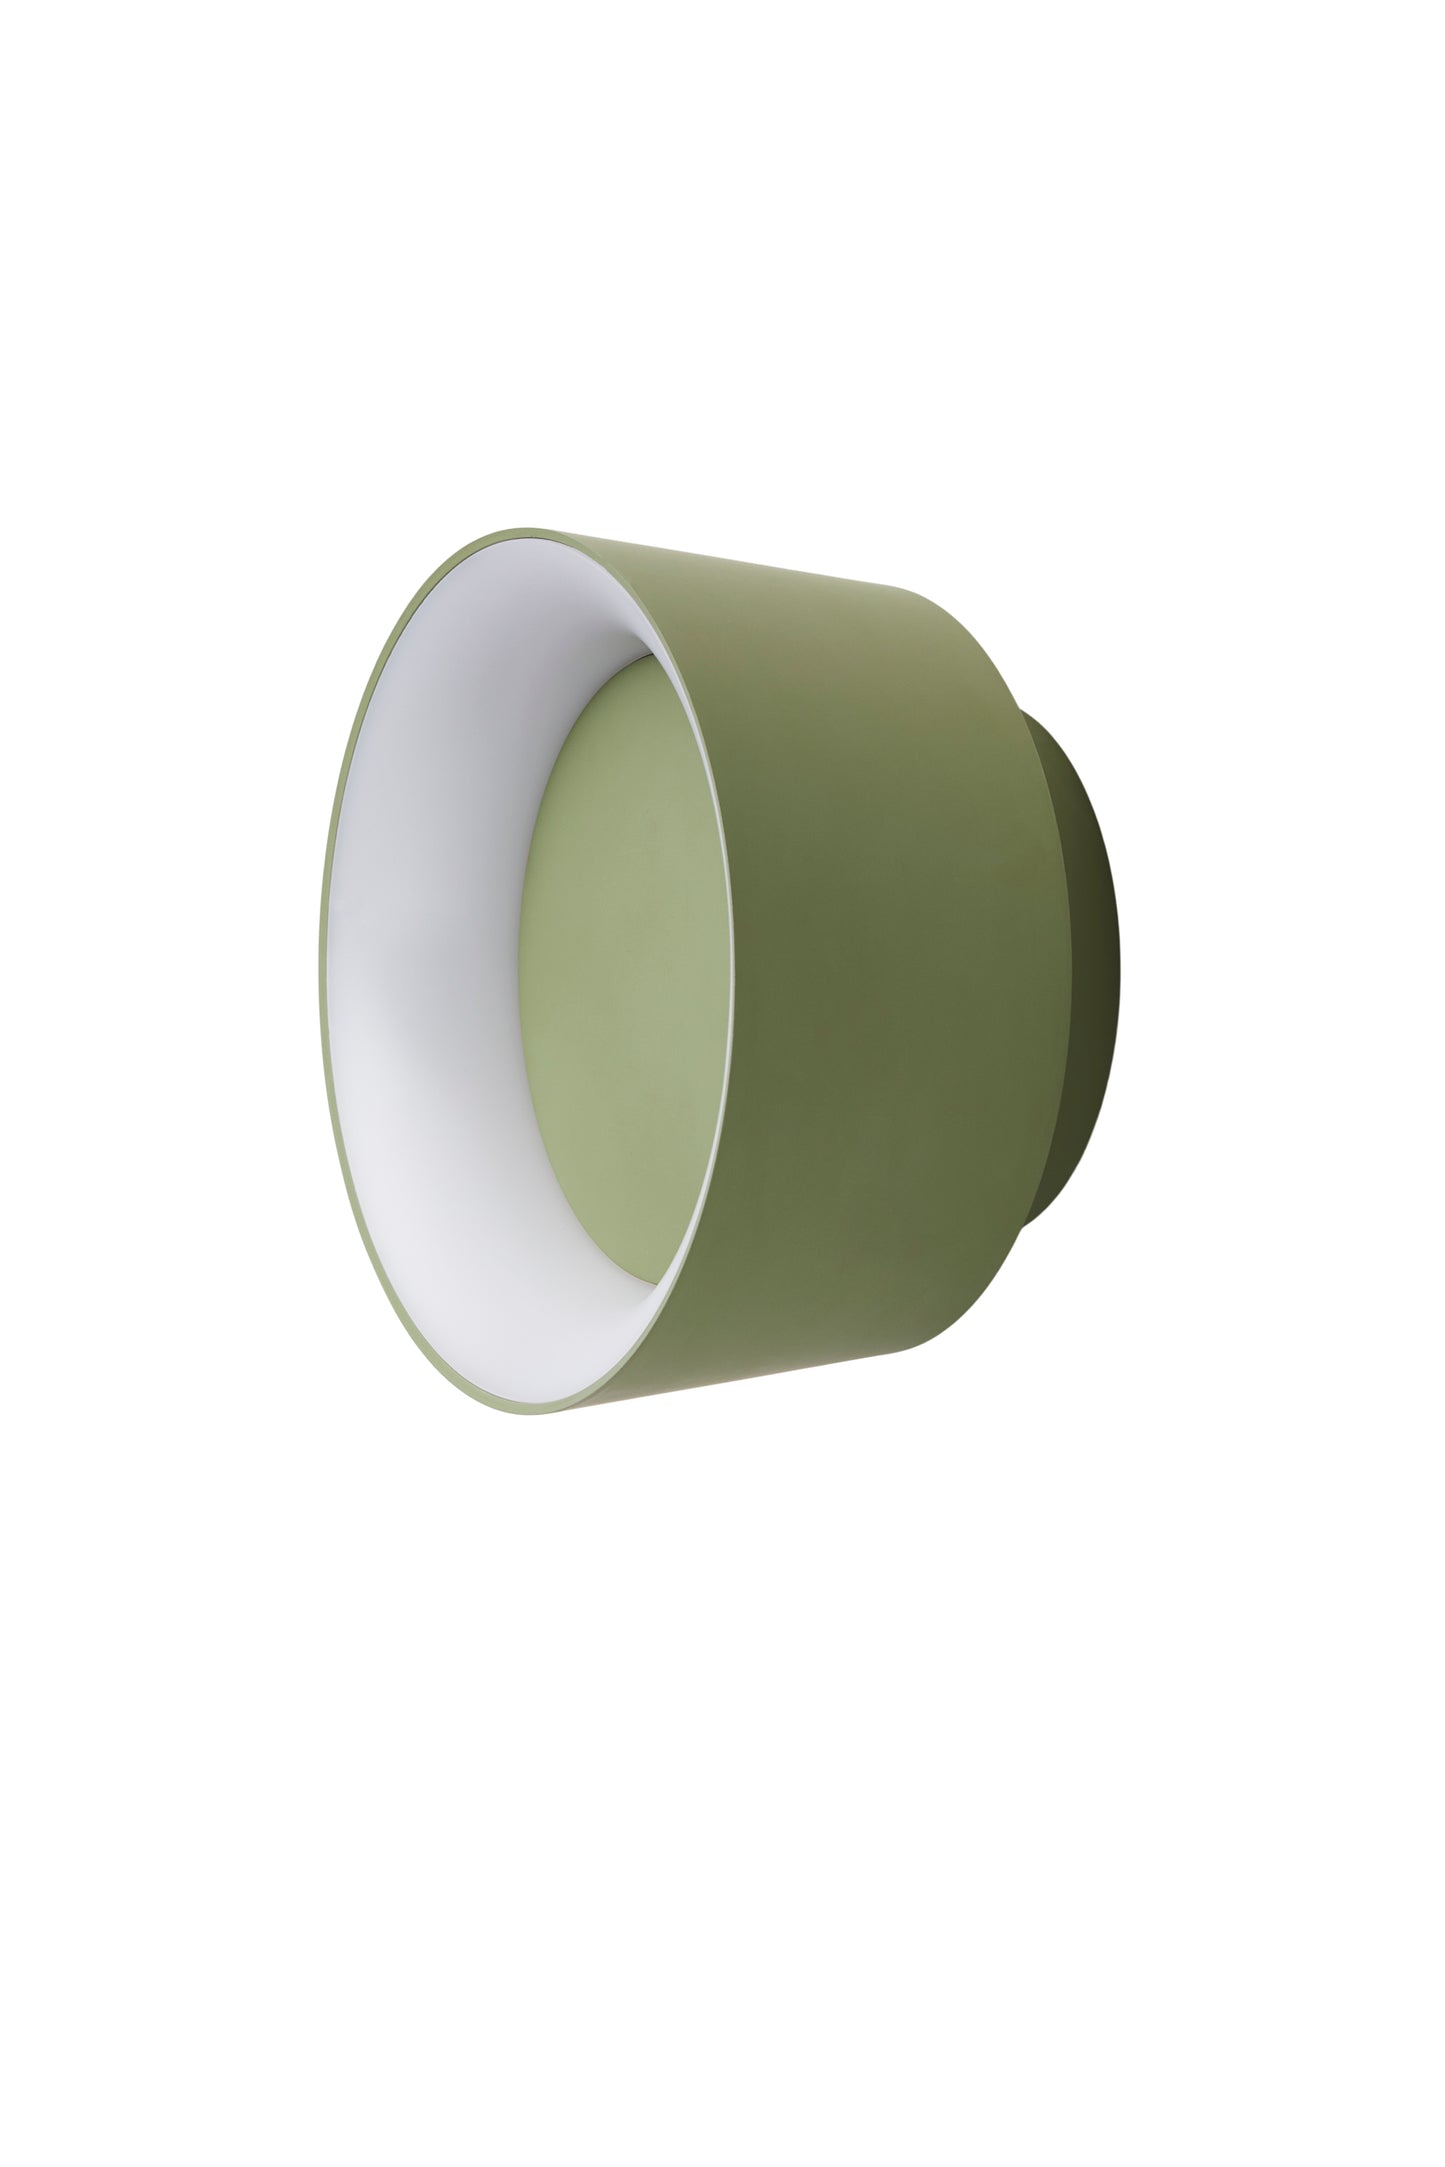 LOOM Design - COOKIE vägg/taklampa - Grön